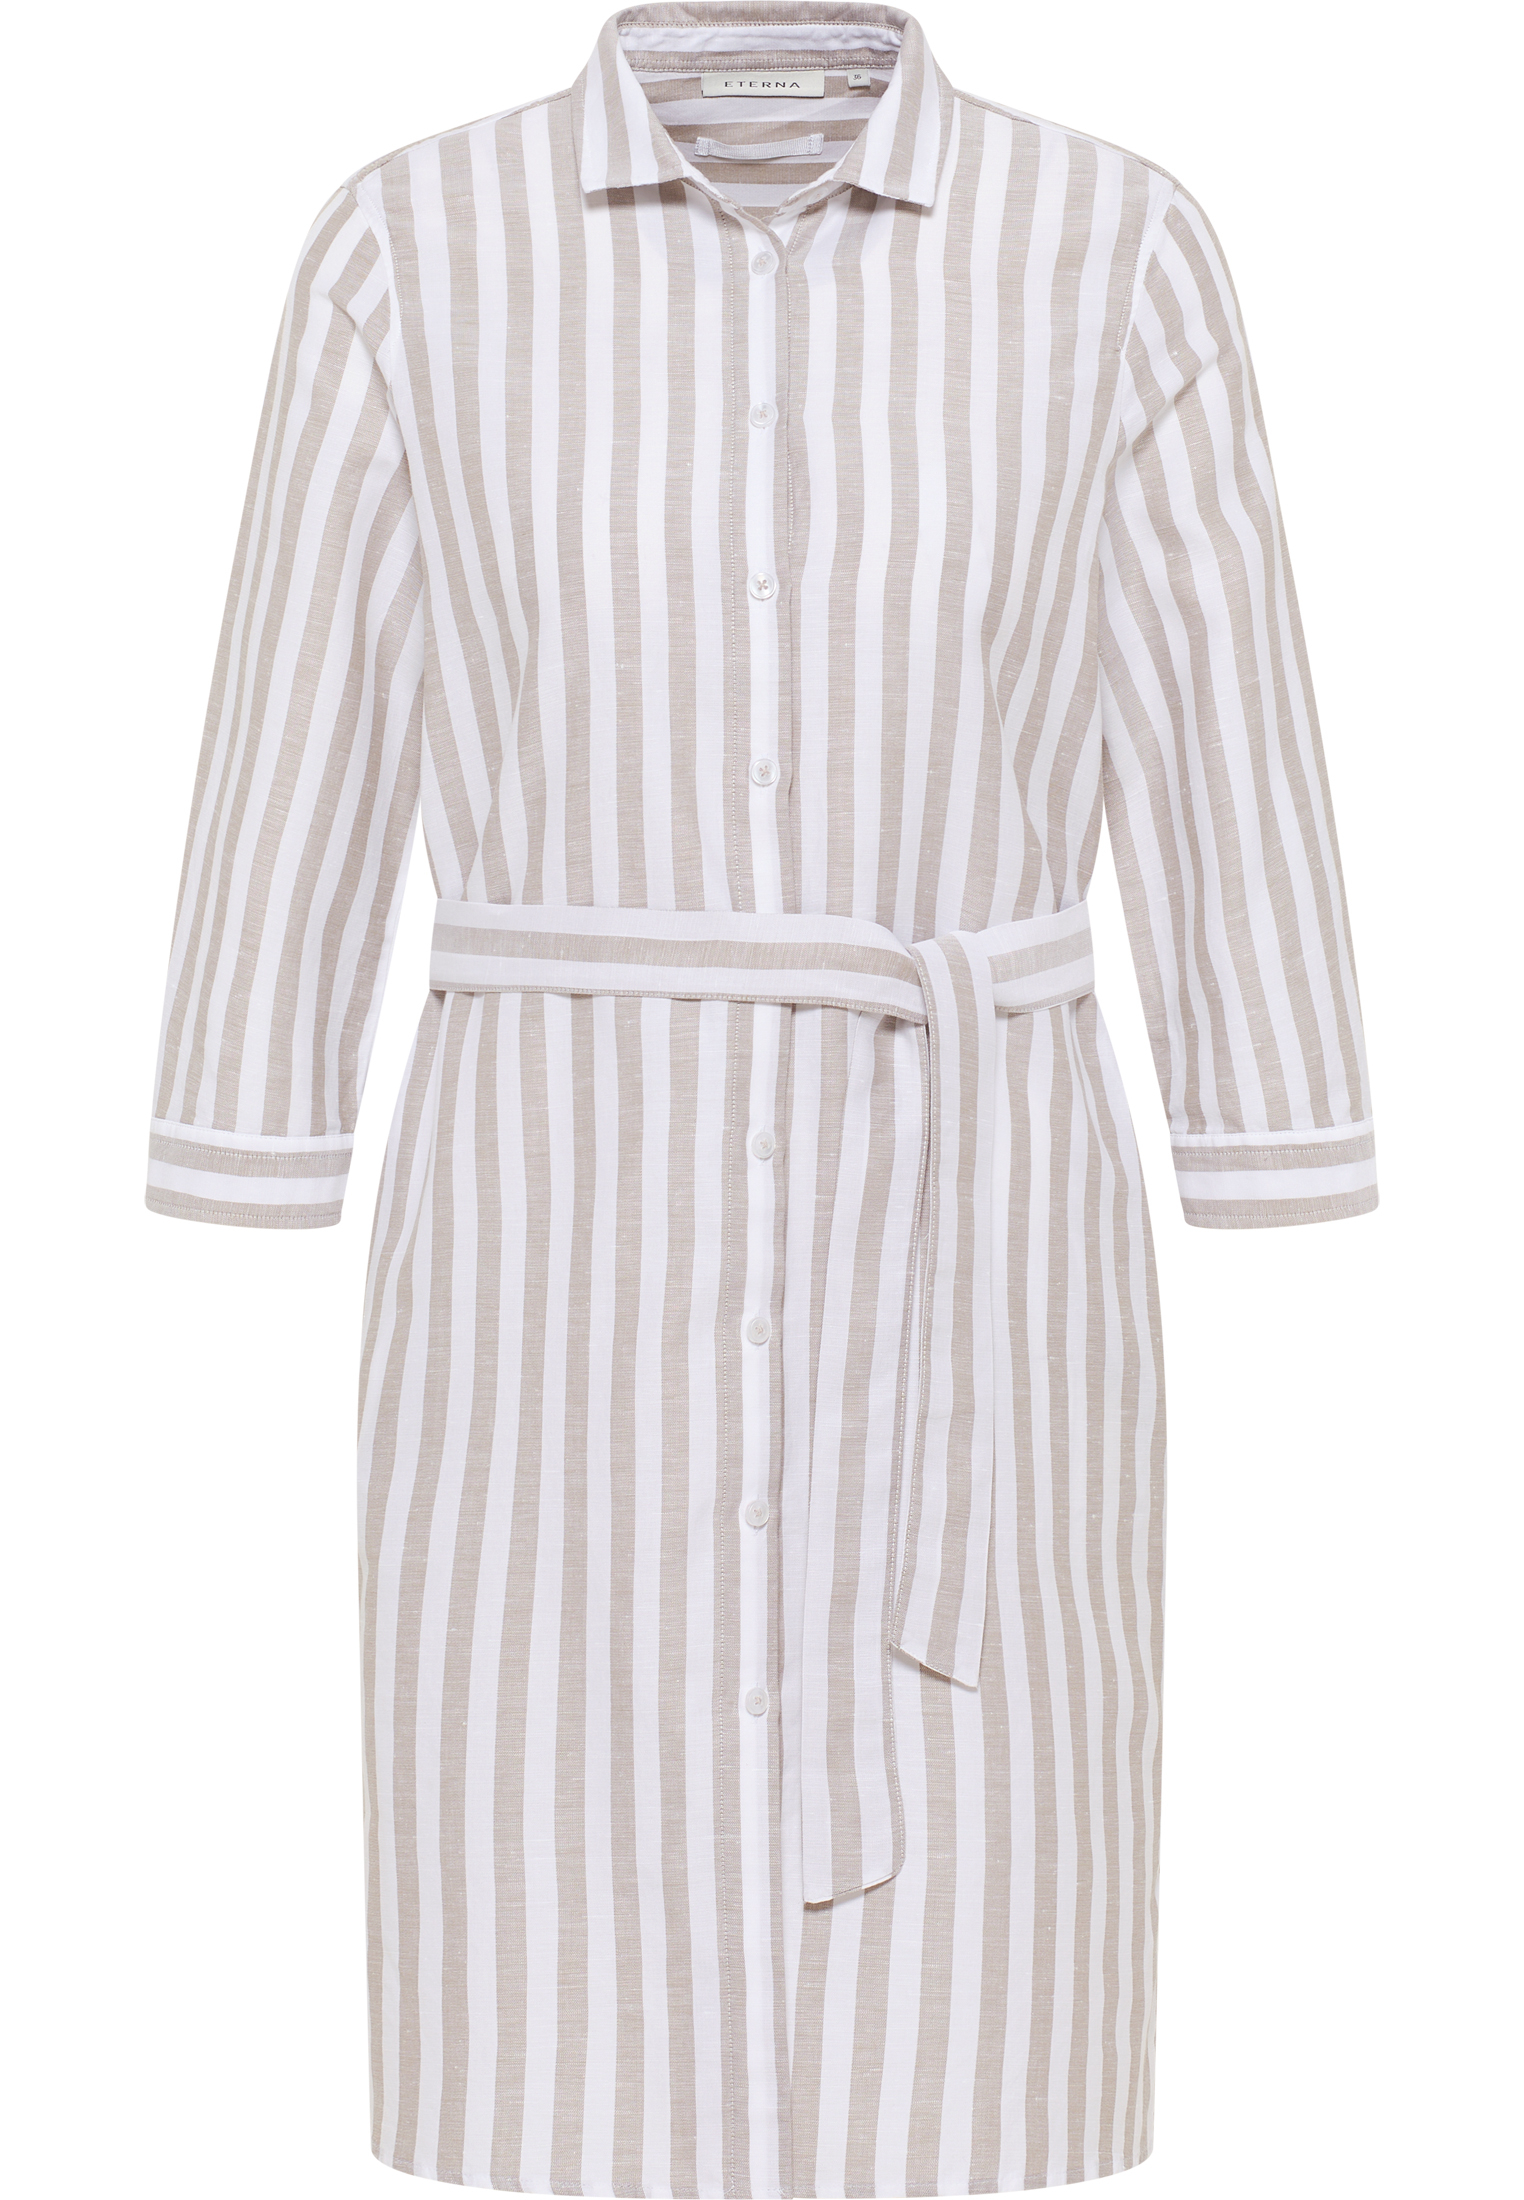 Hemdblusenkleid in khaki striped | | | khaki sleeves 2DR00267-04-52-50-3/4 50 | 3/4